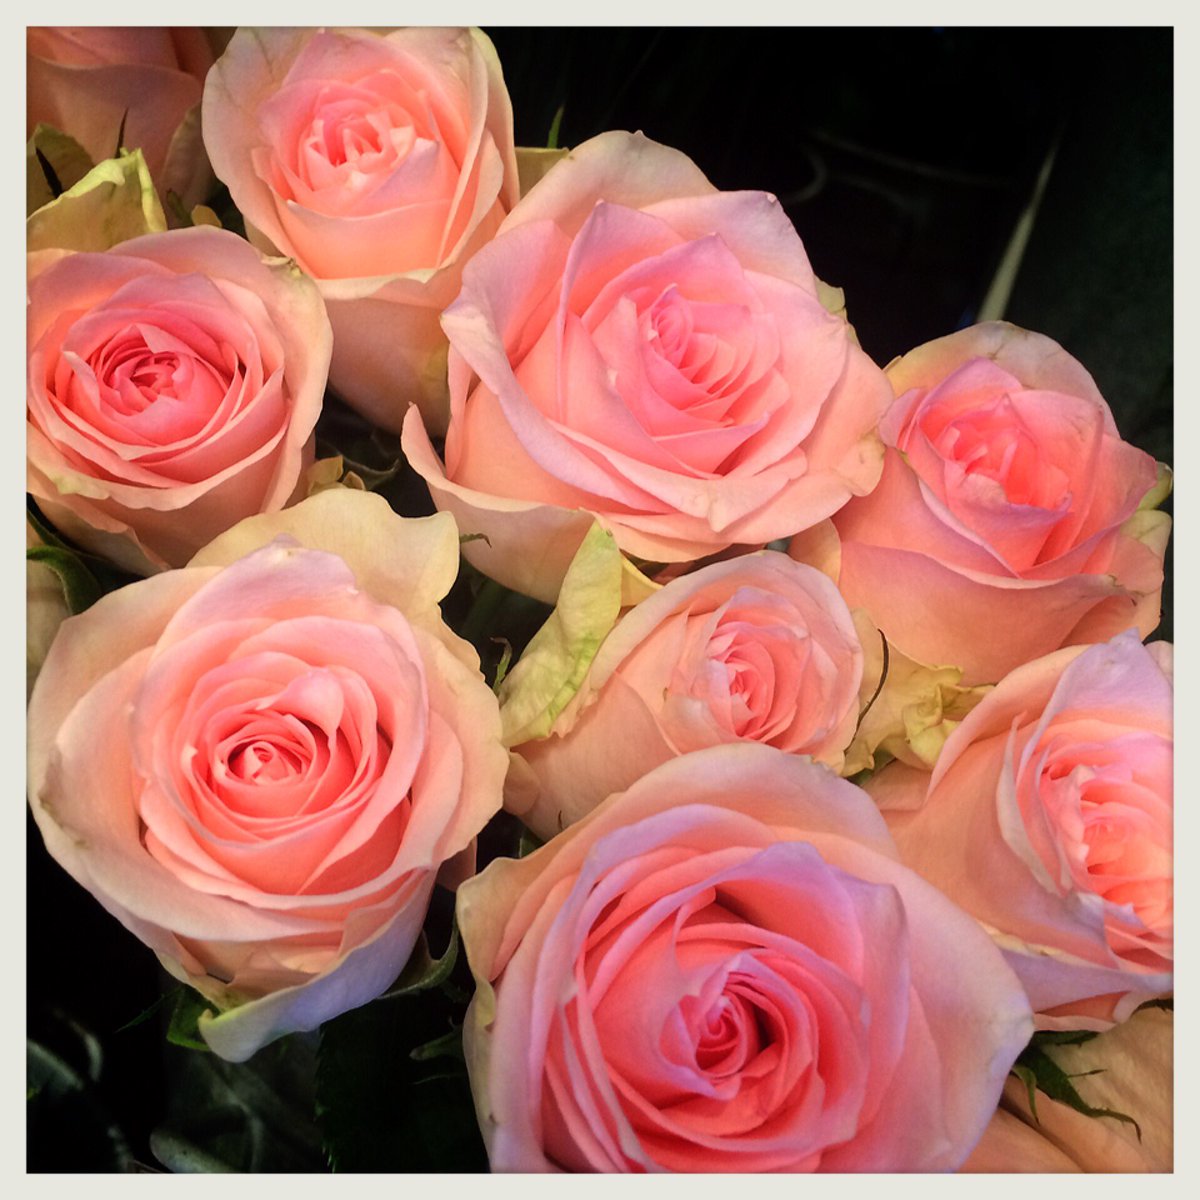 シーズンハーツ 本日のお花 バラ 品種 フラミンゴ 花言葉 幸福 感謝 恋の誓い とってもかわいらしい薄ピンク色のバラ 1本でラッピングしても 花束に入れてもとっても喜ばれます 女性へのプレゼントにオススメです O